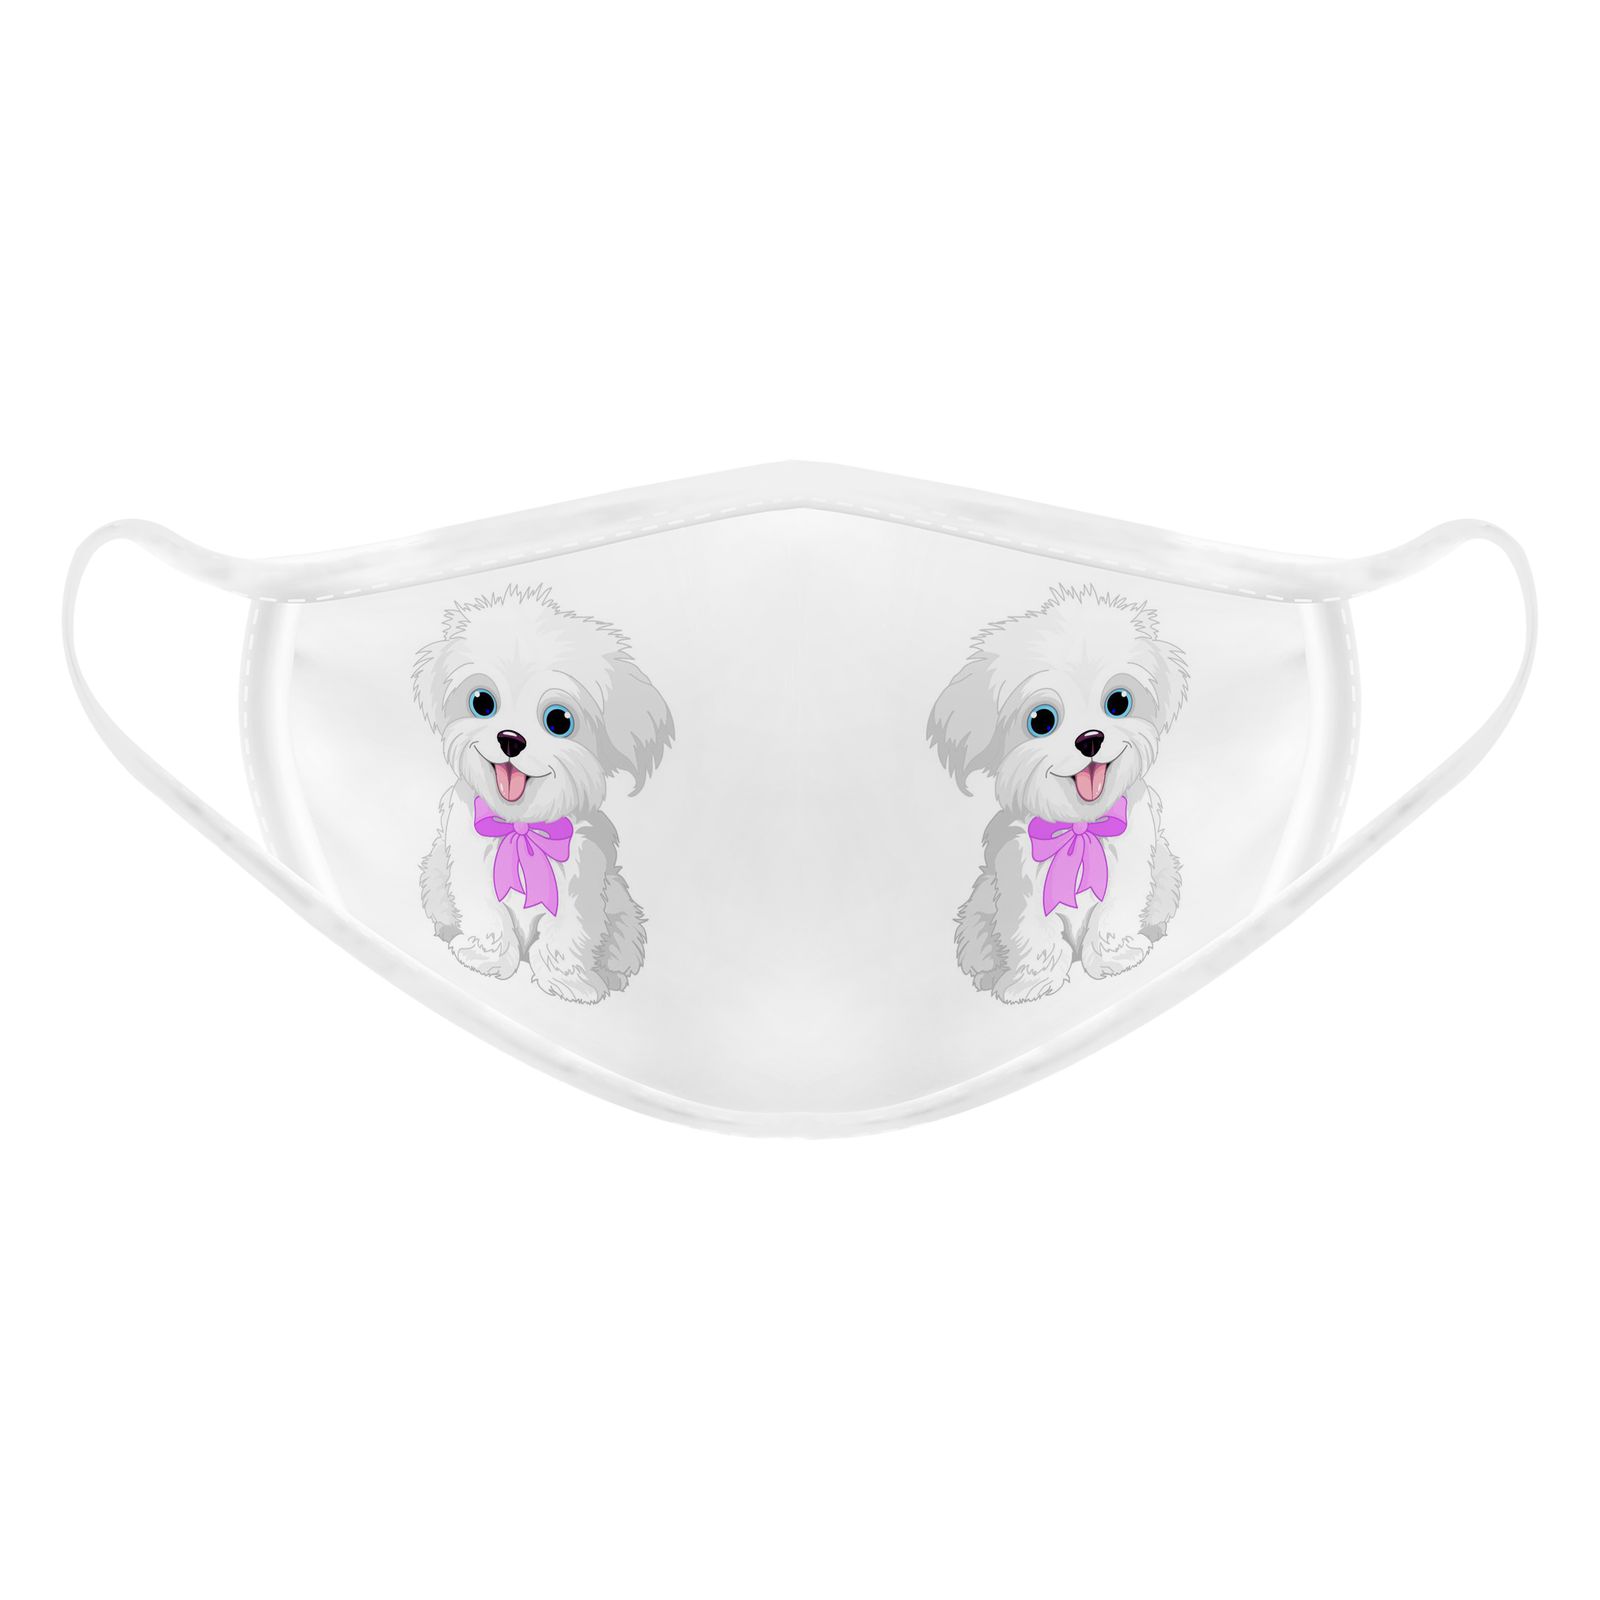 ماسک تزیینی بچگانه طرح سگ کد 617015 -  - 2